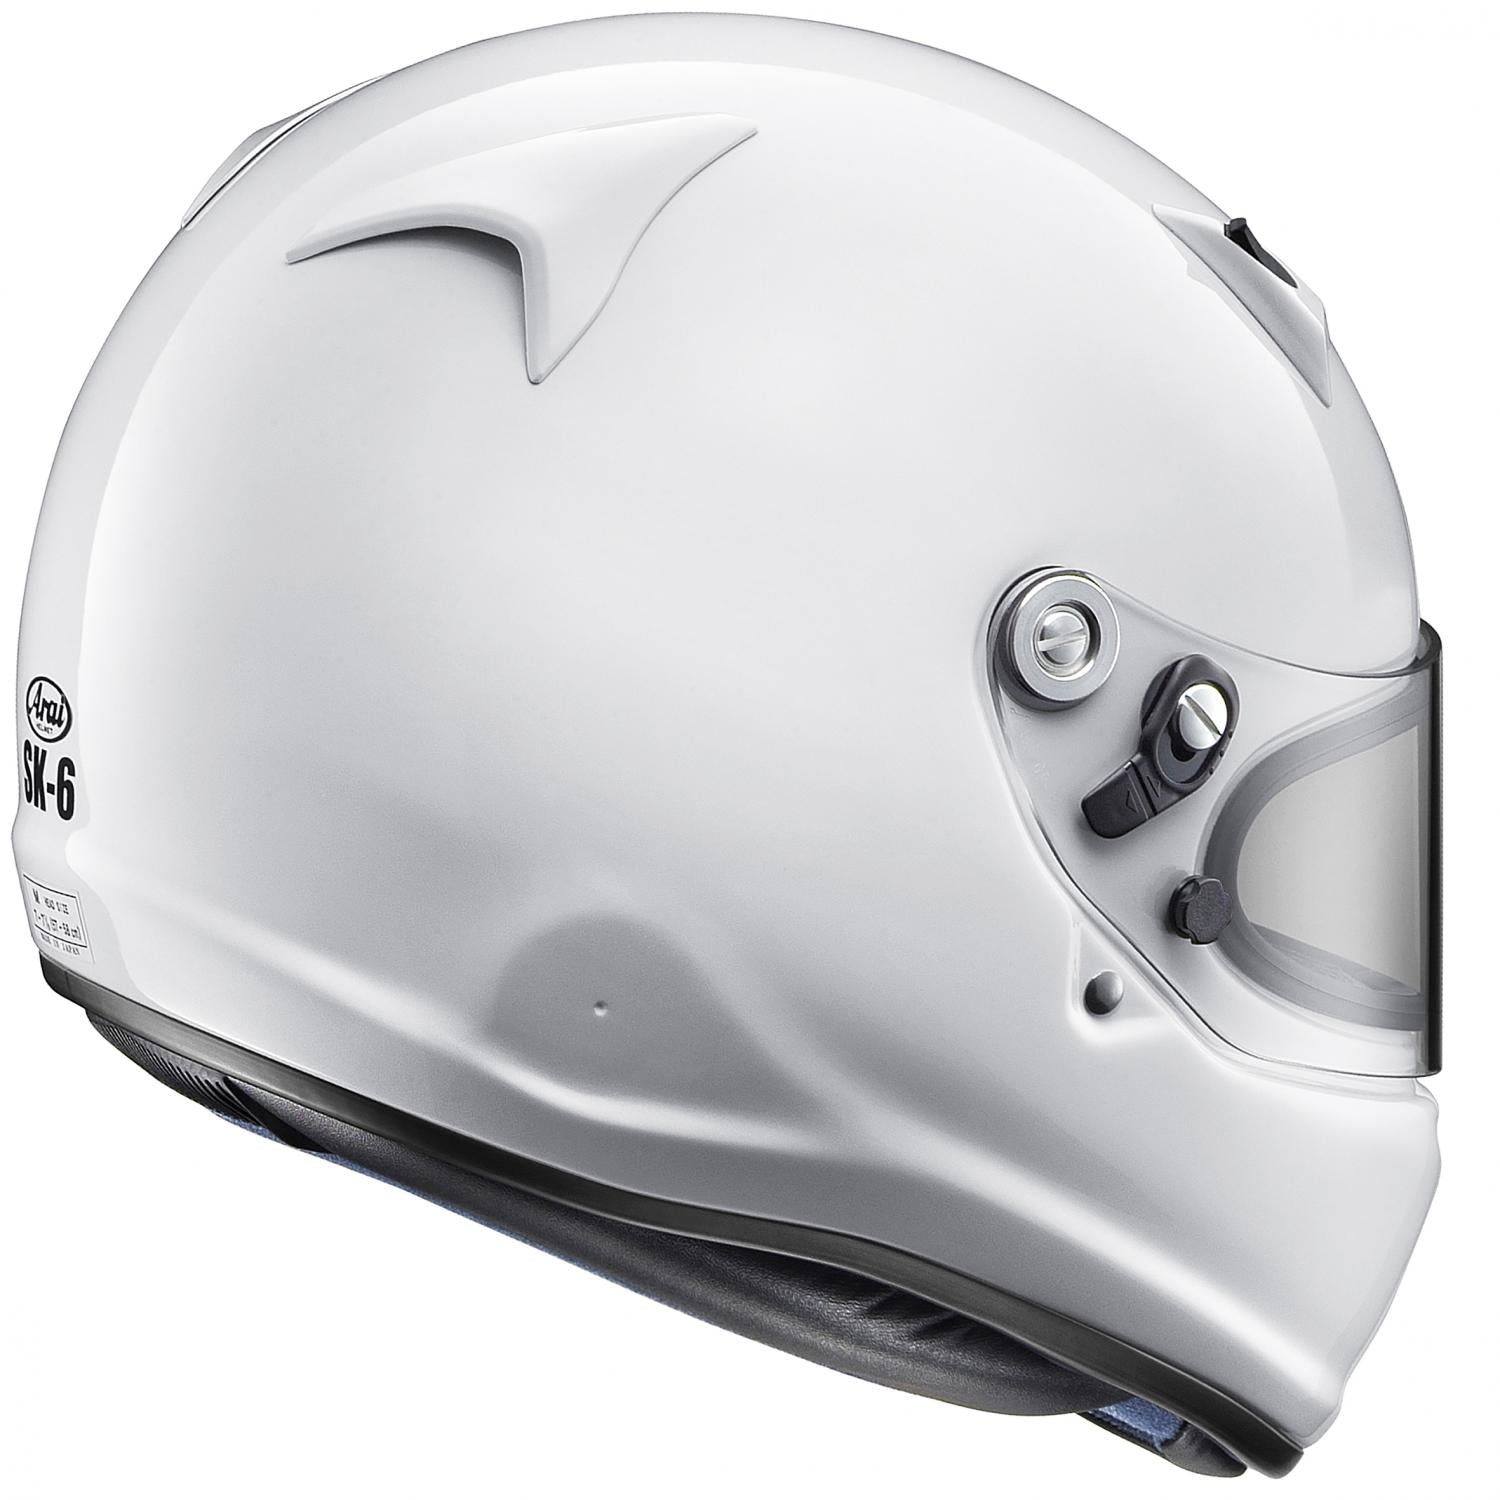 Arai - SK-6 Helmet